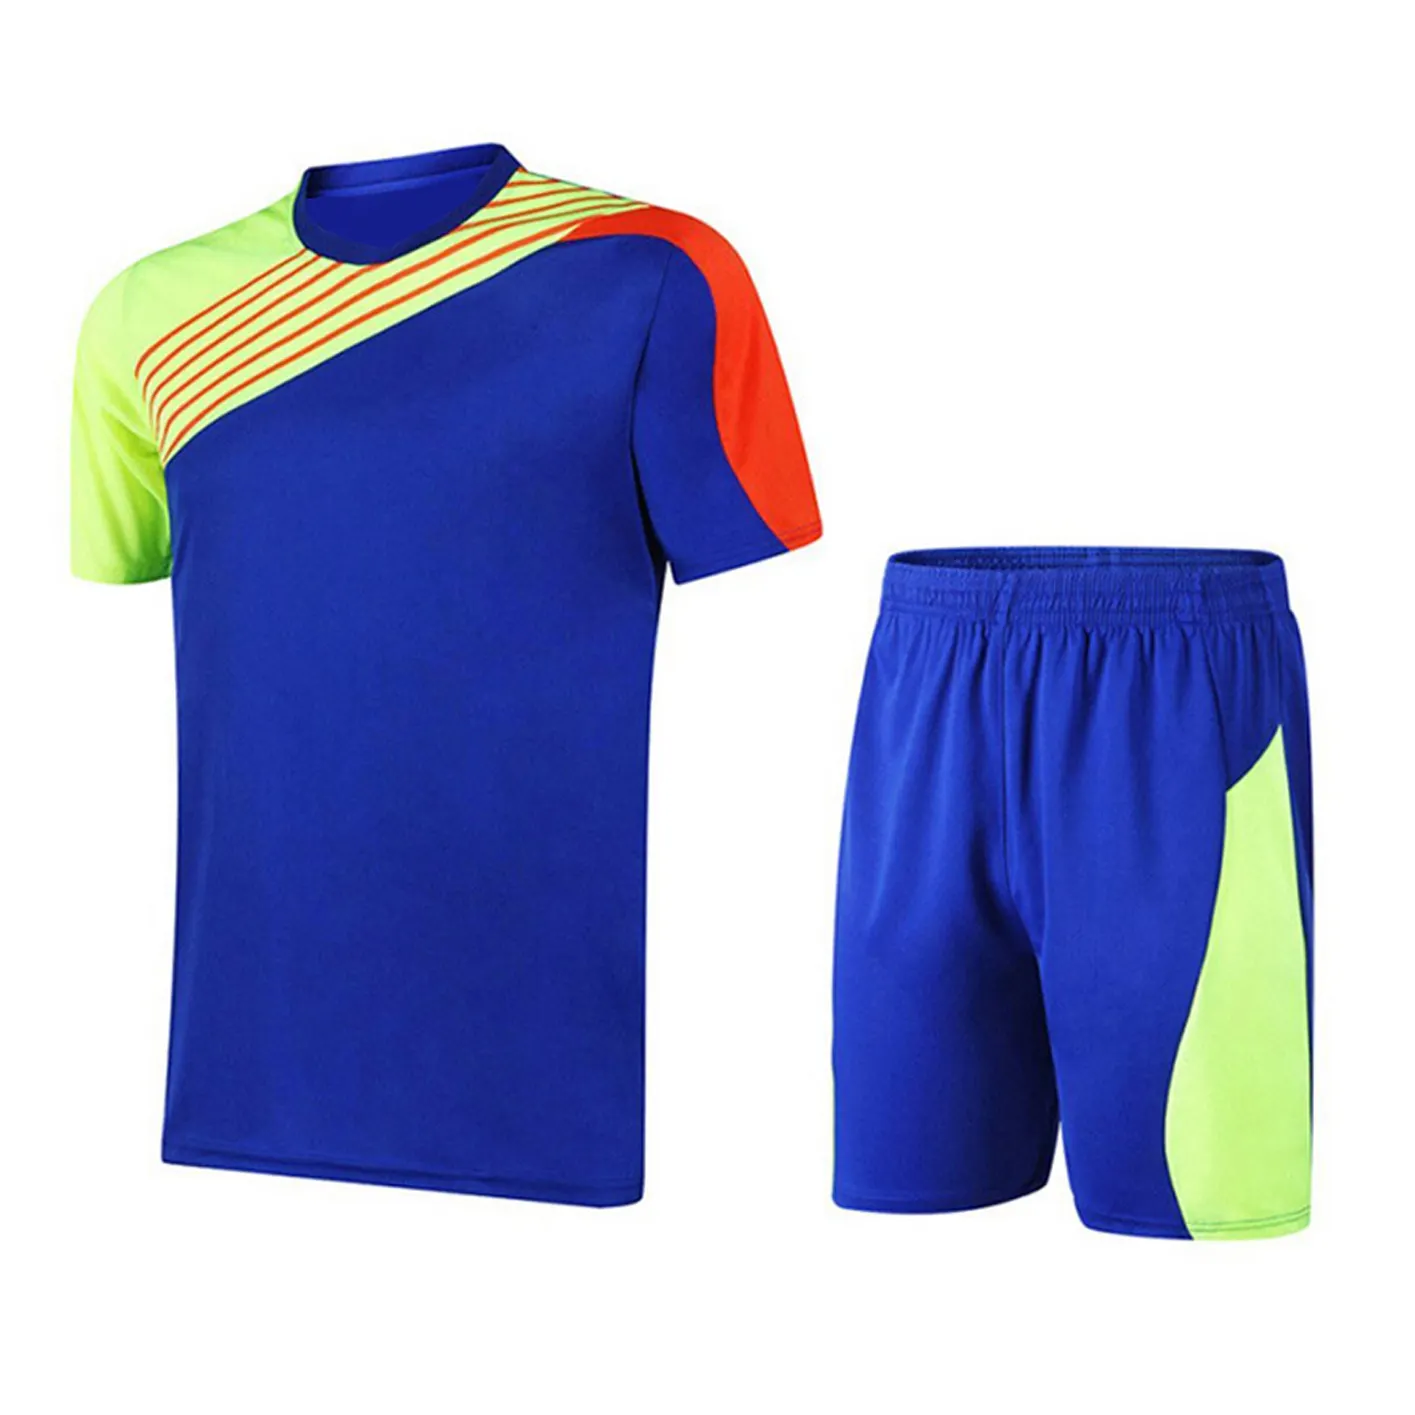 Soccer jersey Football Uniforms Kit Sets new arrivals OEM design soccer uniforms Manufacture ODM most popular Soccer uniform